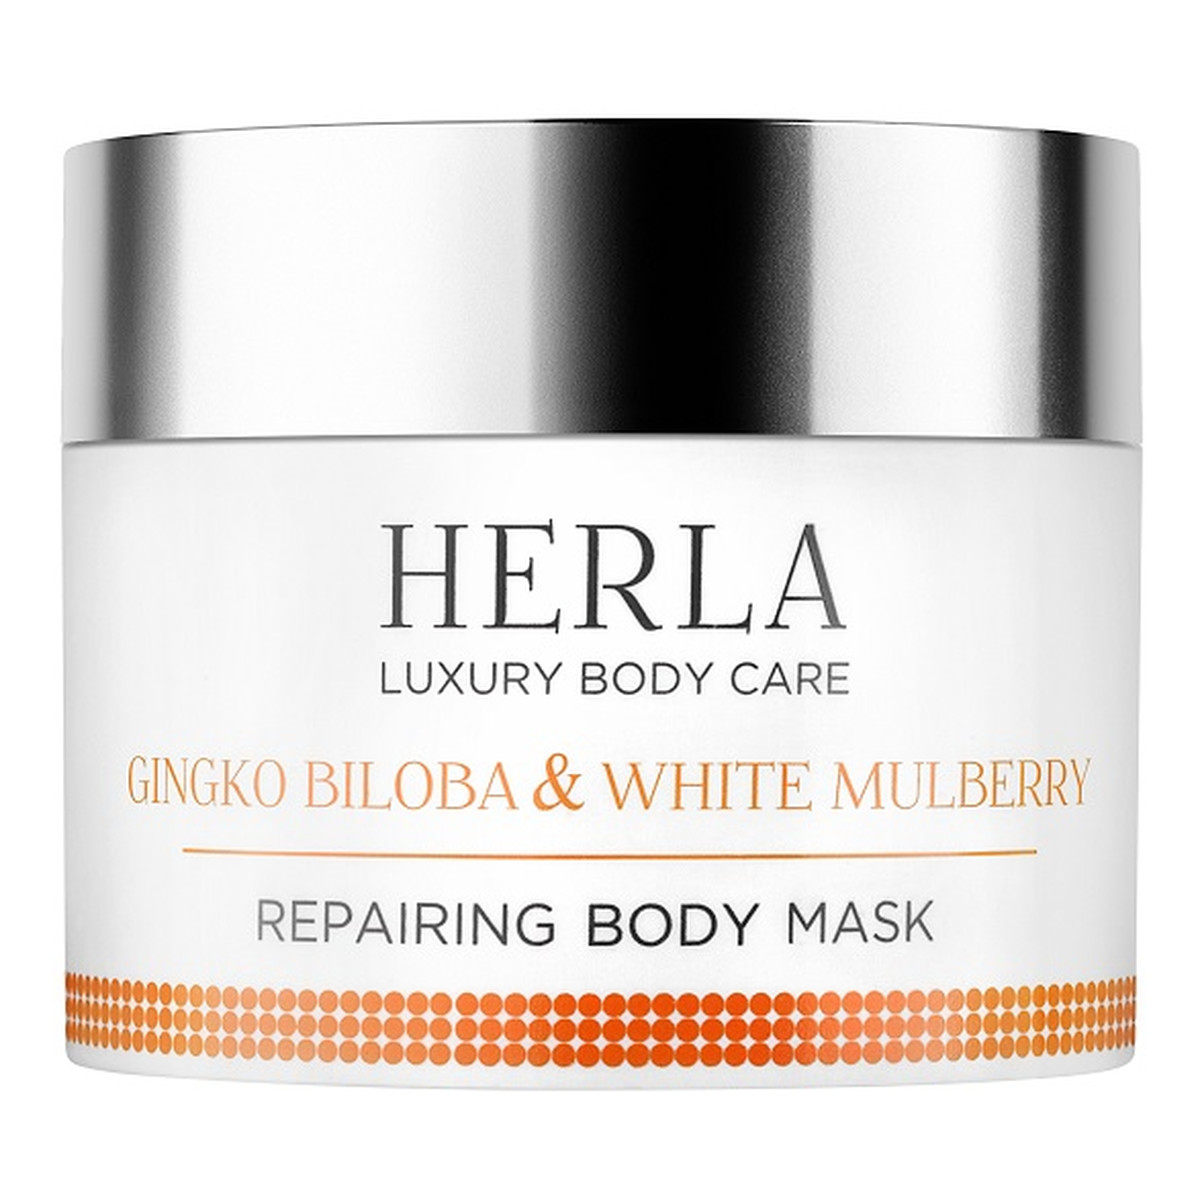 Herla Luxury Body Care regenerująca maska do ciała Miłorząb Japoński & Morwa Biała 200ml